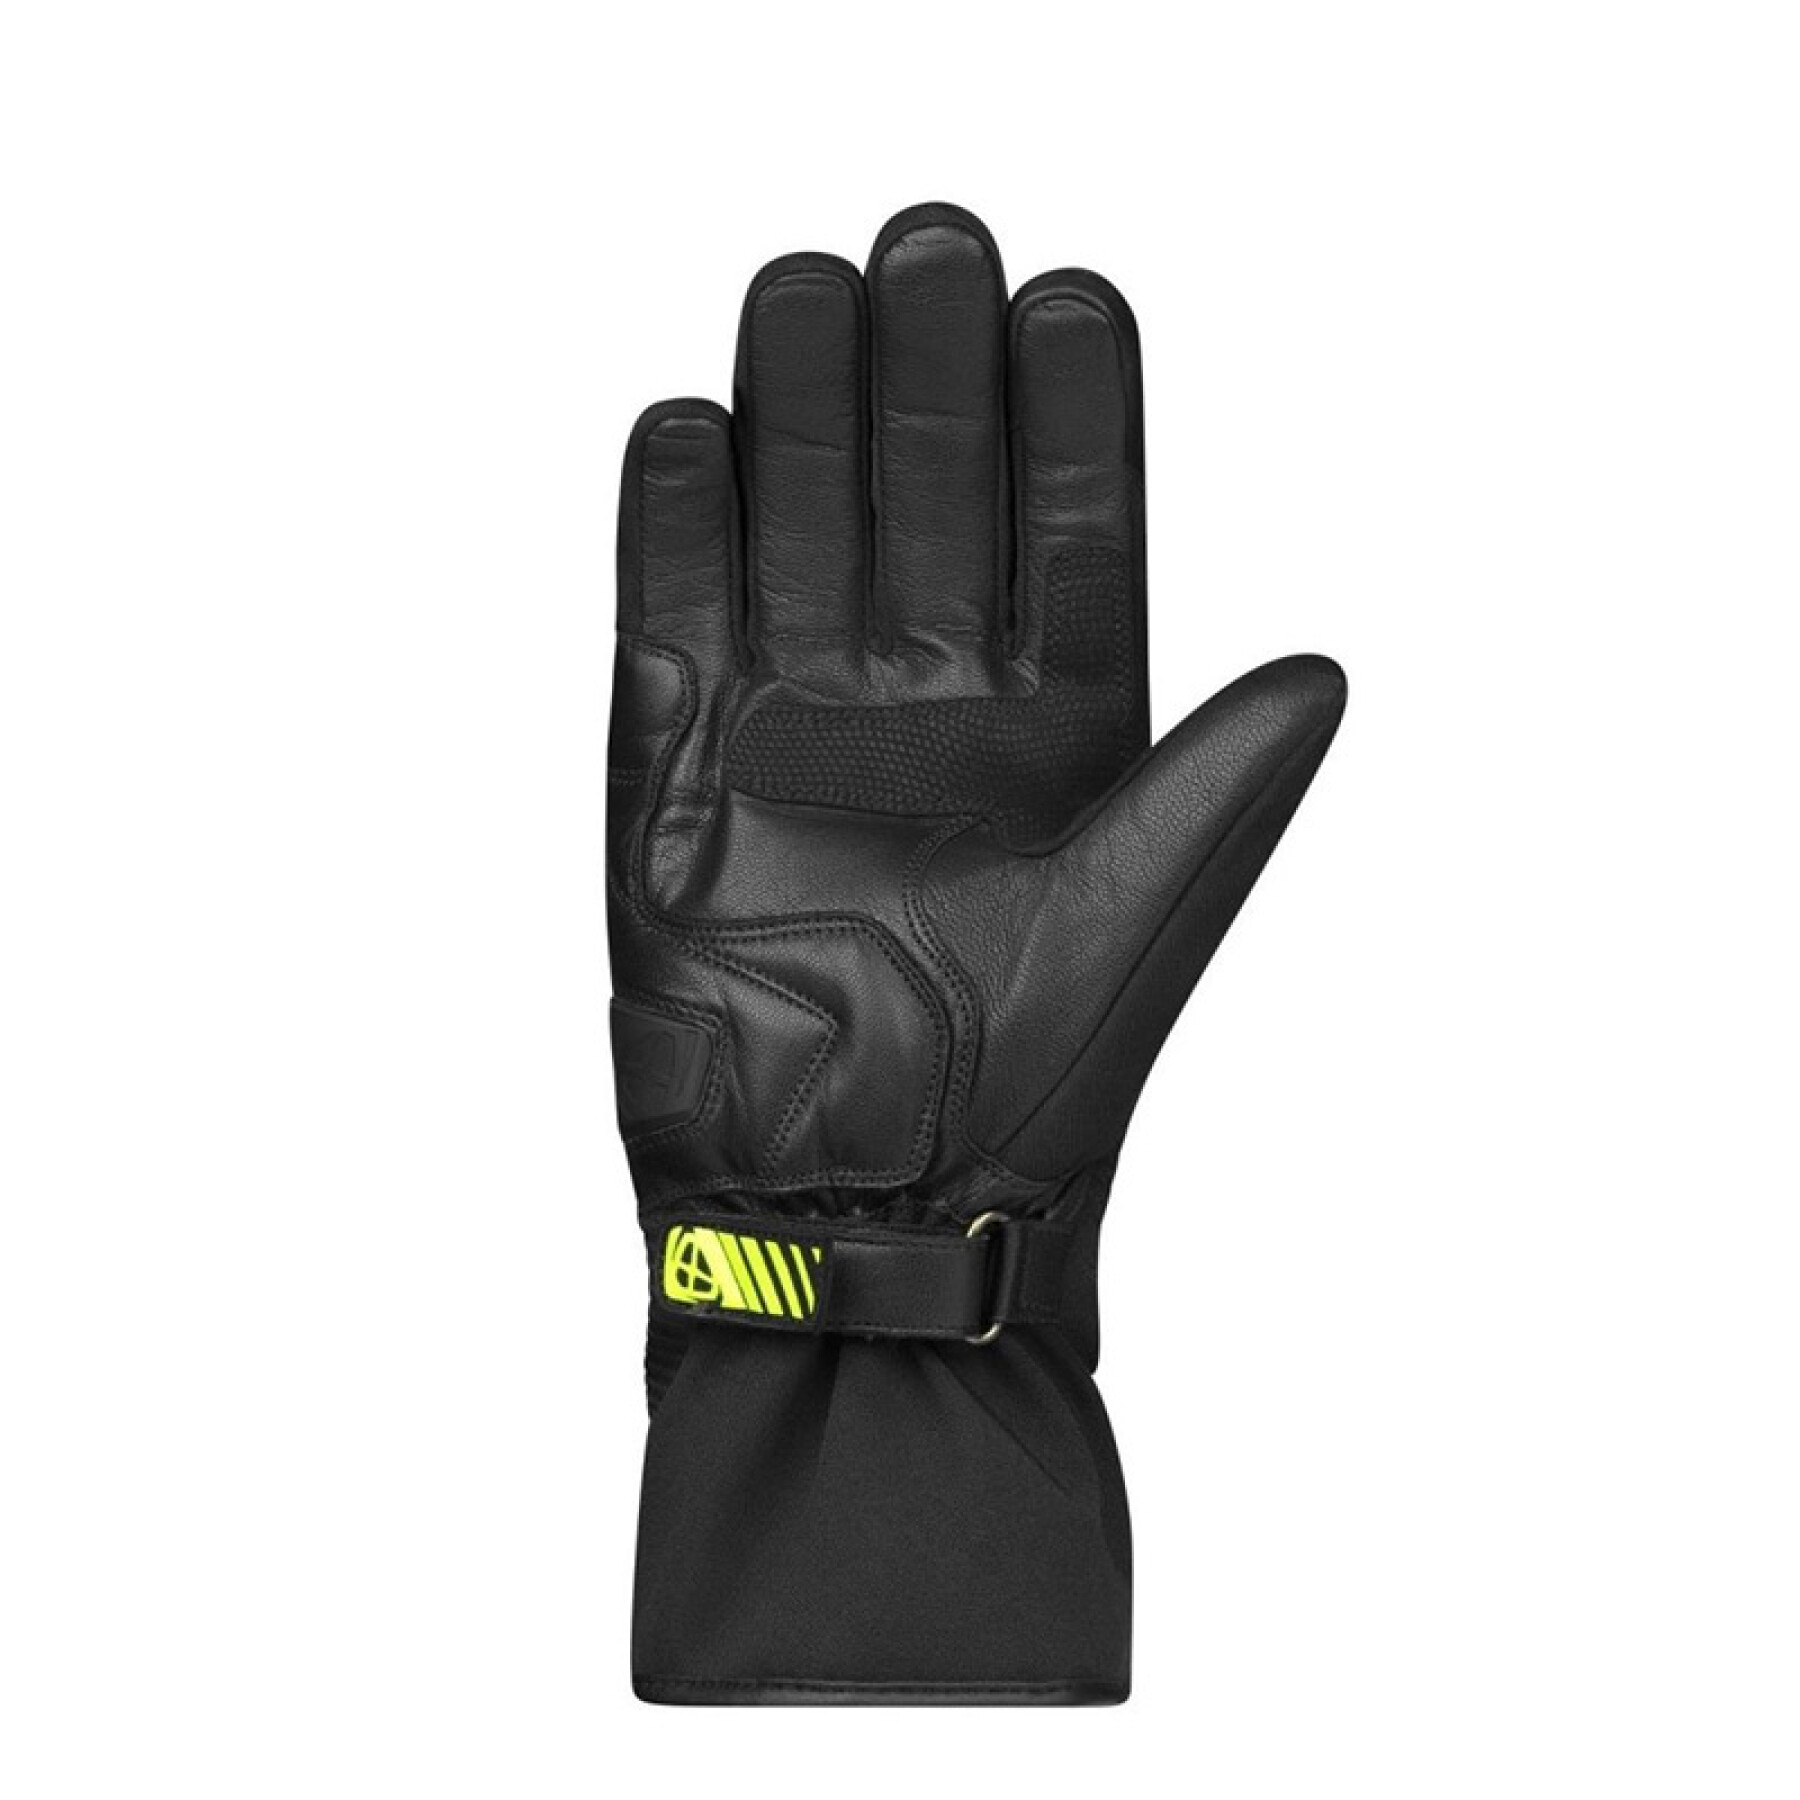 Winter motorcycle gloves Ixon Pro Midgard